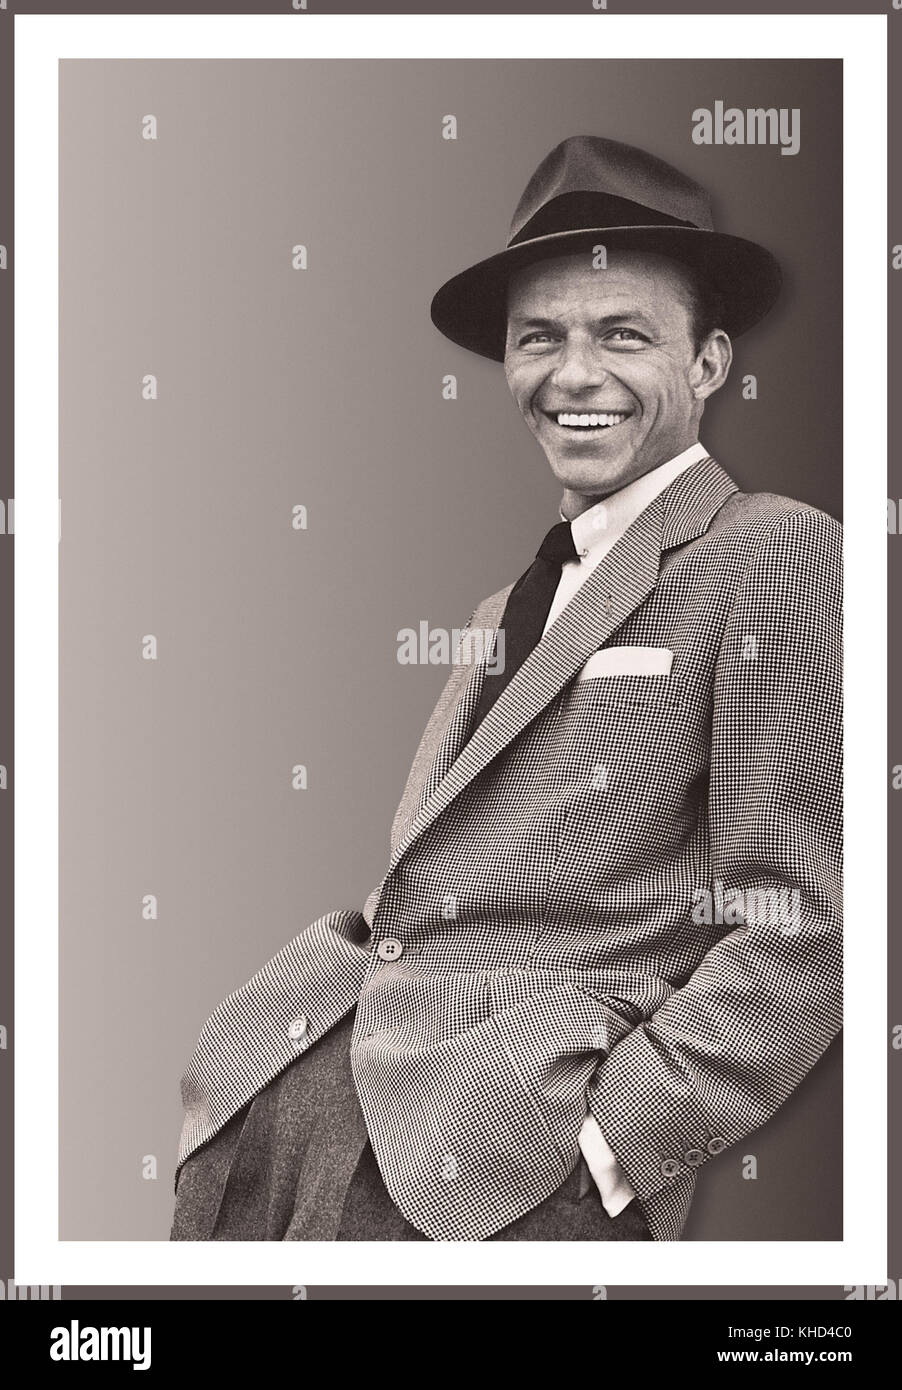 FRANK SINATRA INFORMELLES PORTRÄT 50er Jahre Toned RGB schwarz-weiß Francis Albert Sinatra 12. Dezember 1915 – 14. Mai 1998 war ein amerikanischer Sänger, Schauspieler und Produzent, der zu den beliebtesten und einflussreichsten Musikkünstlern des 20. Jahrhunderts gehörte. Er ist einer der meistverkauften Musikkünstler aller Zeiten und hat weltweit mehr als 150 Millionen Platten verkauft. Sinatra wurde in Hoboken, New Jersey, als Sohn italienischer Einwanderer geboren und begann seine musikalische Karriere in der Swing-Ära mit den Bandleadern Harry James und Tommy Dorsey. Stockfoto